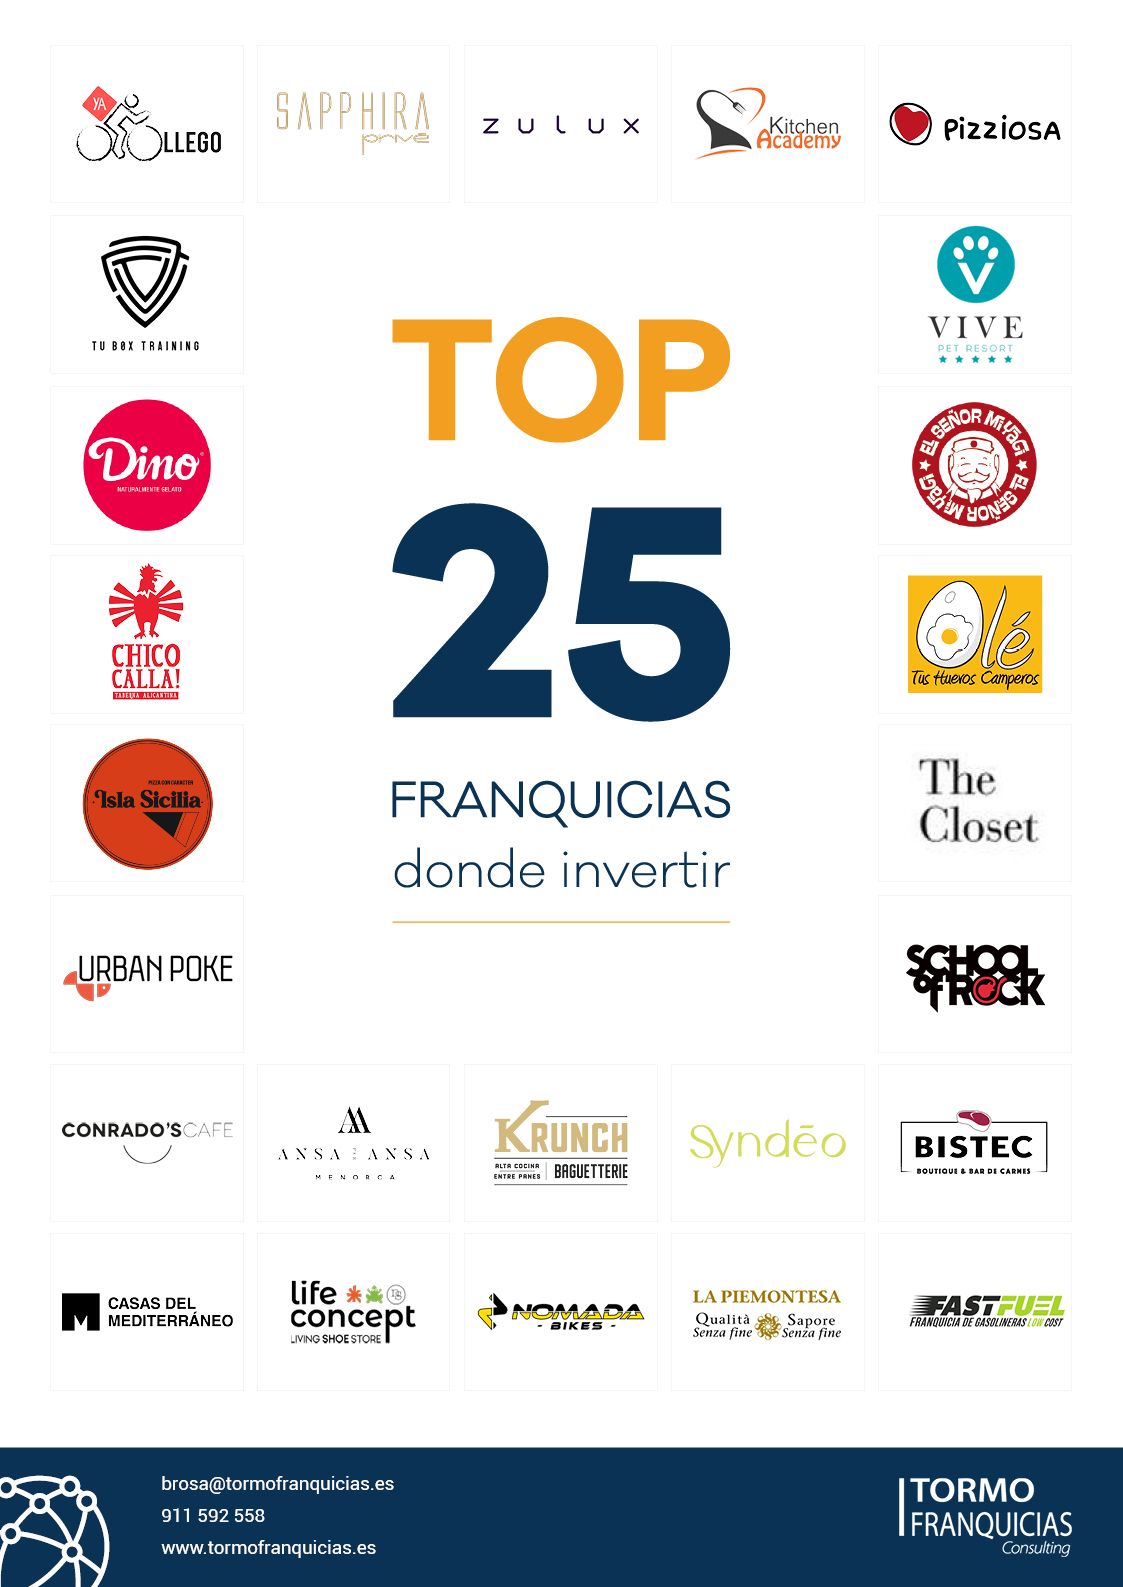 Tormo Franquicias presenta el especial "Top 25 Franquicias" dirigida a emprendedores e inversores